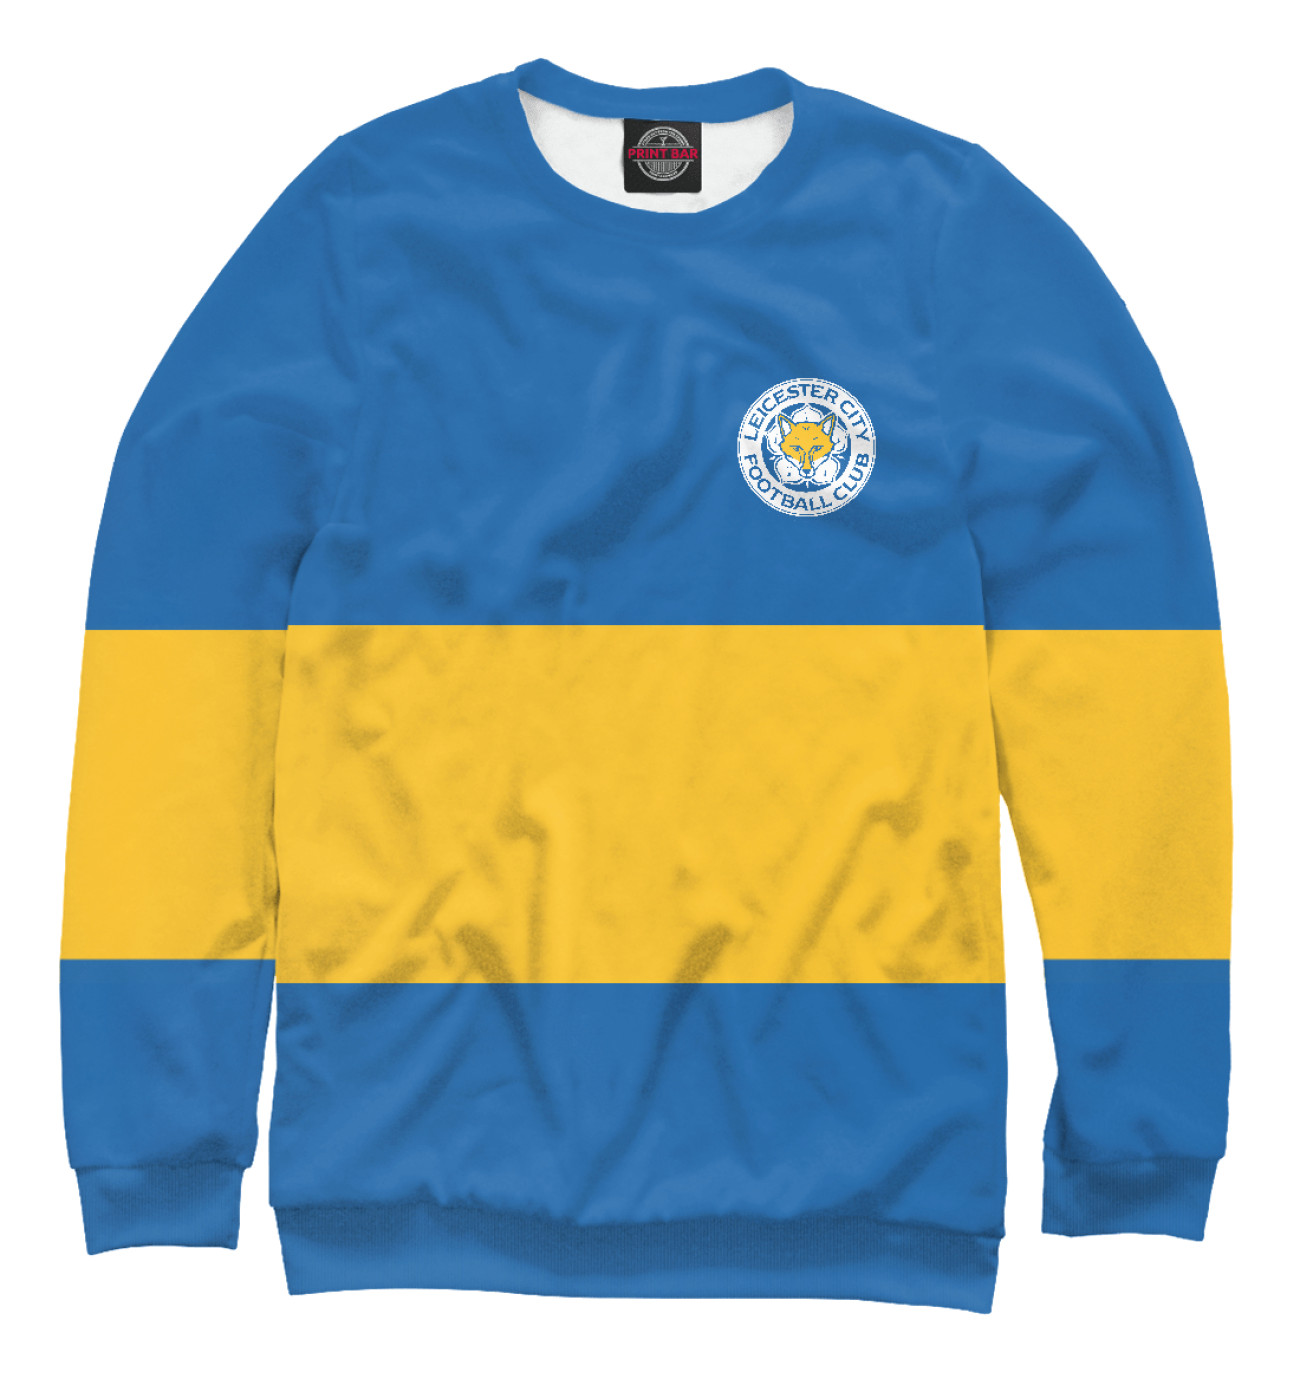 Мужской Свитшот Leicester City Blue&Yellow, артикул: FTO-730483-swi-2